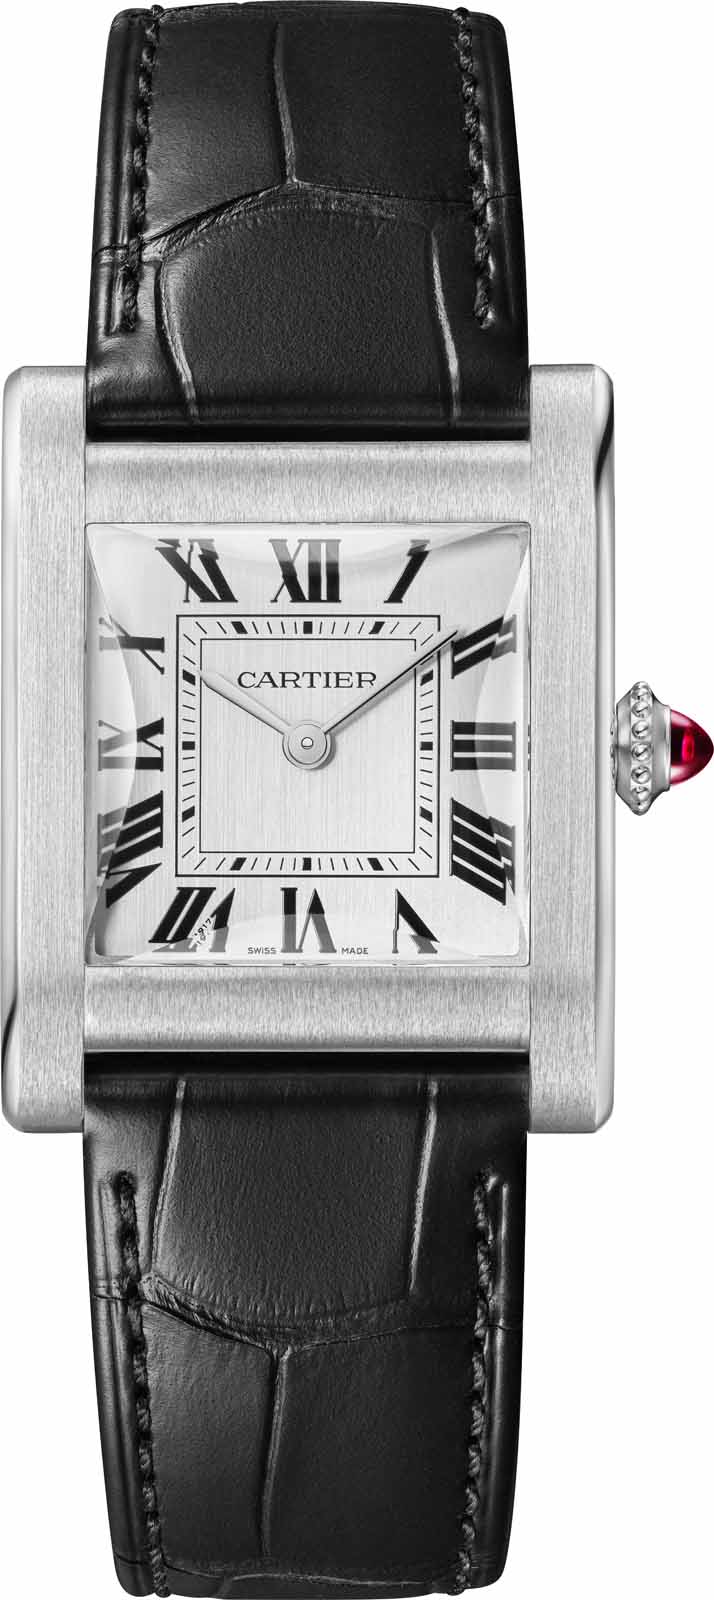 Cartier、新作ウォッチコレクションを発表。「タンク ノルマル 